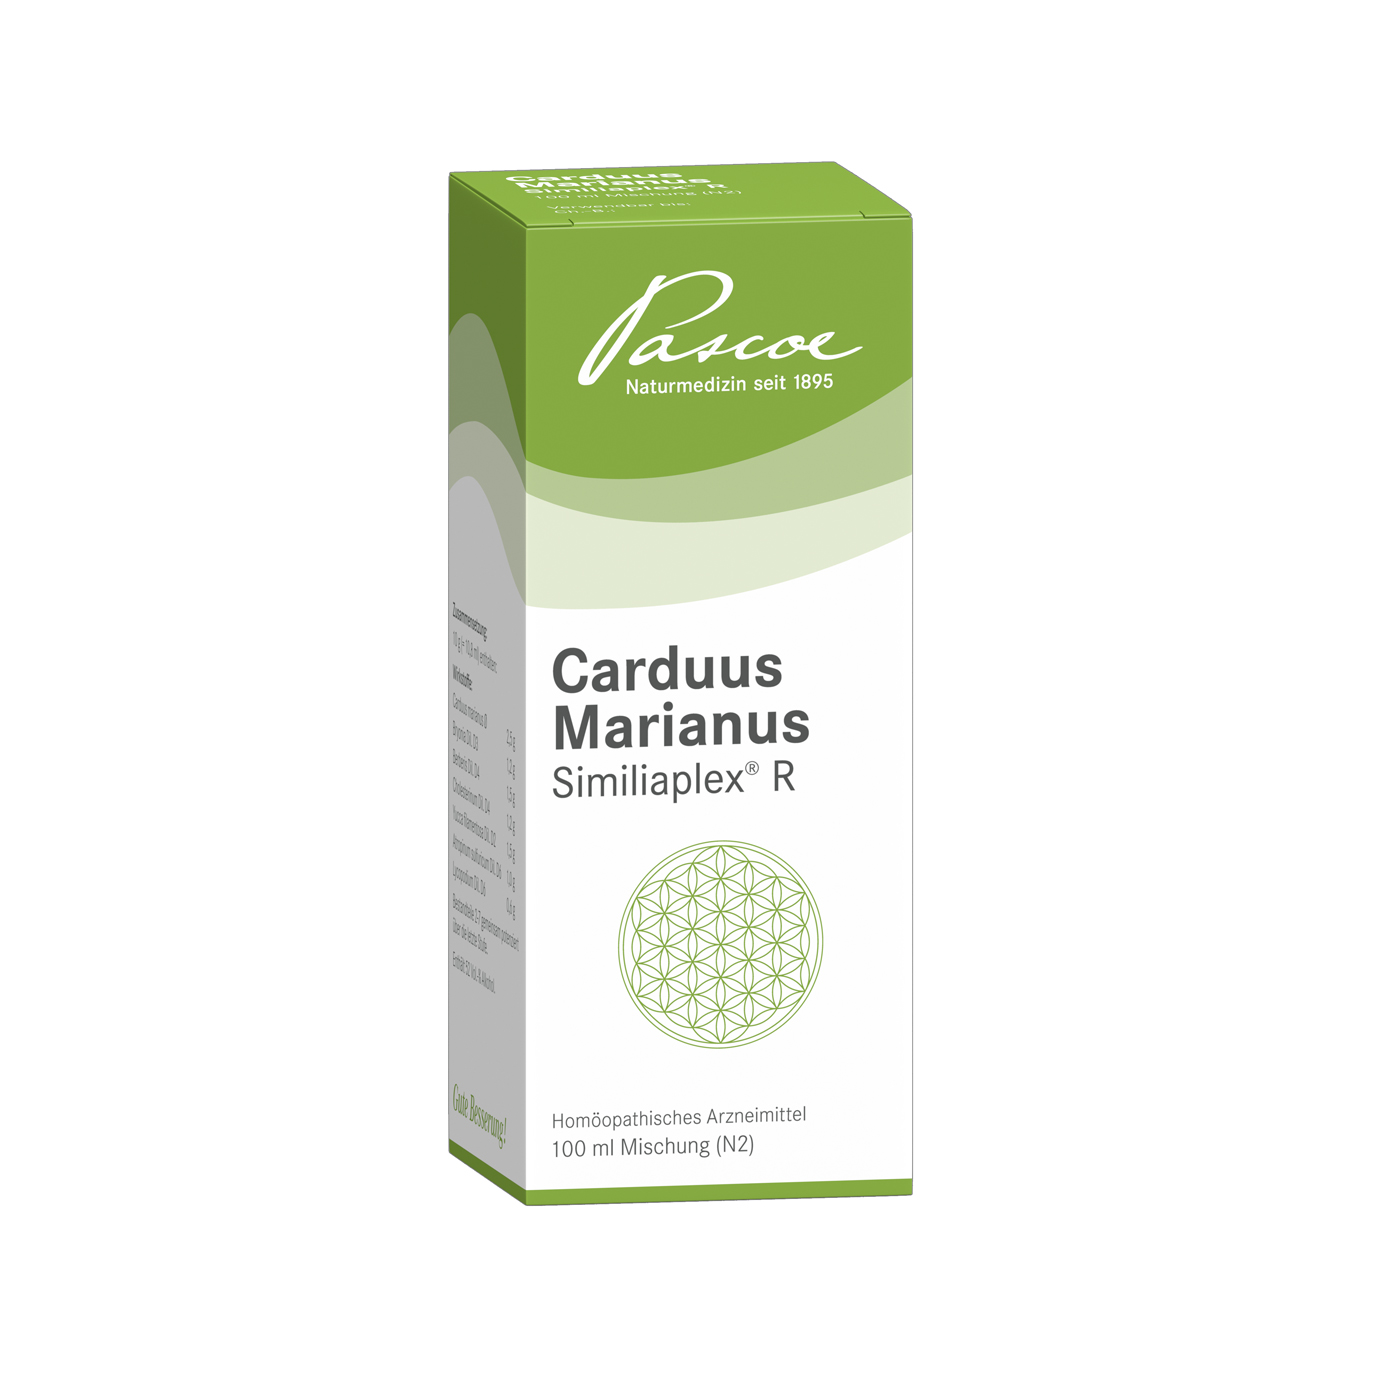 Carduus marianus Similiaplex R 100 ml Packshot PZN 04193562